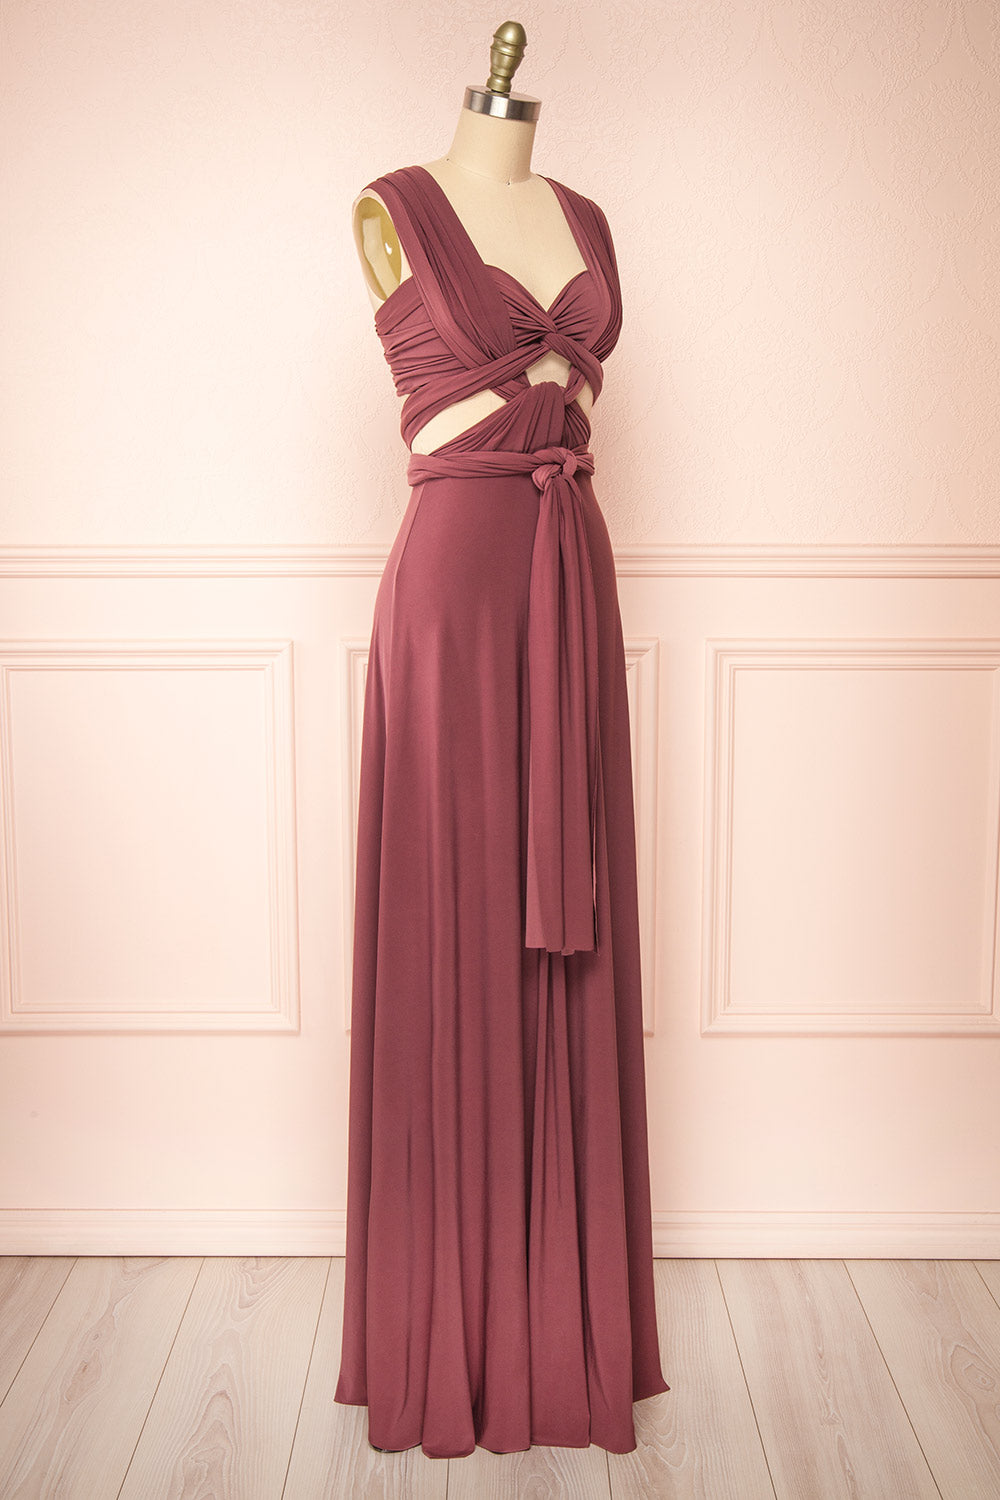 Violaine Dark Mauve Convertible Maxi Dress | Boutique 1861 side view